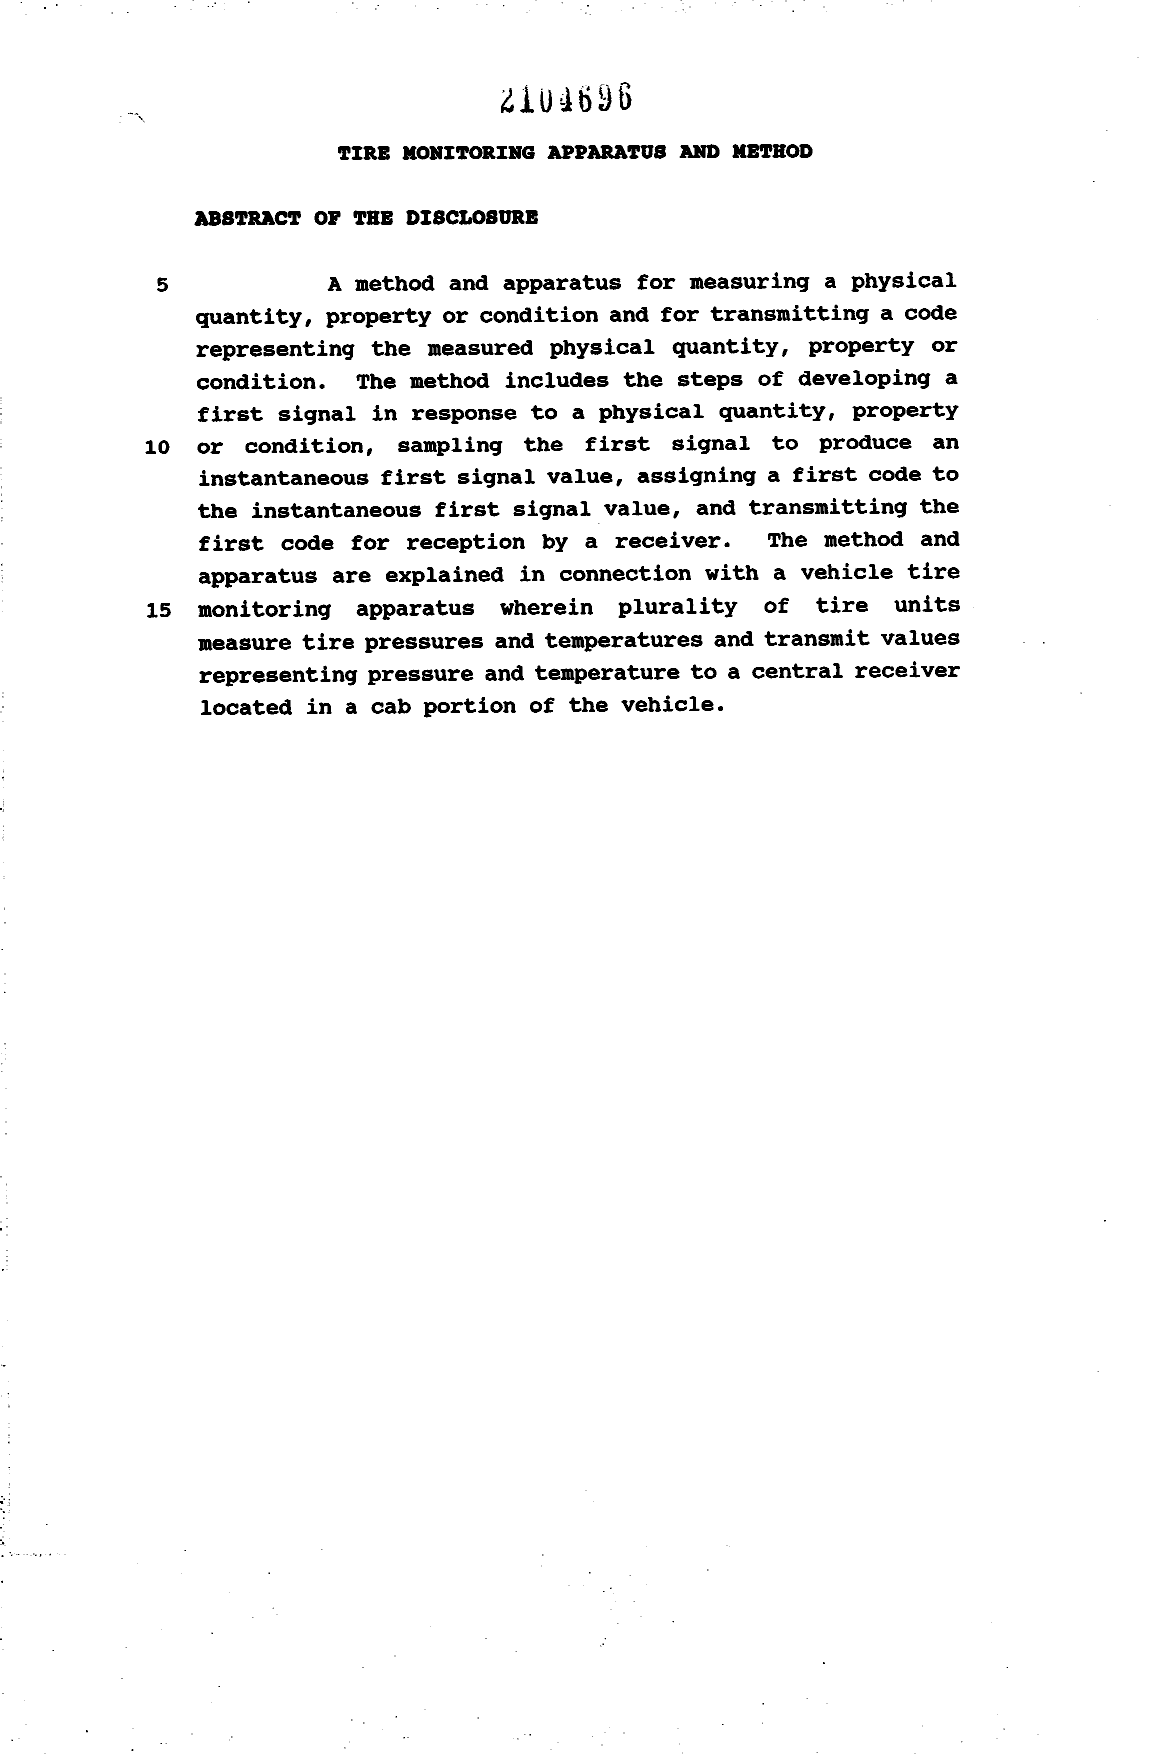 Document de brevet canadien 2104696. Abrégé 19940326. Image 1 de 1